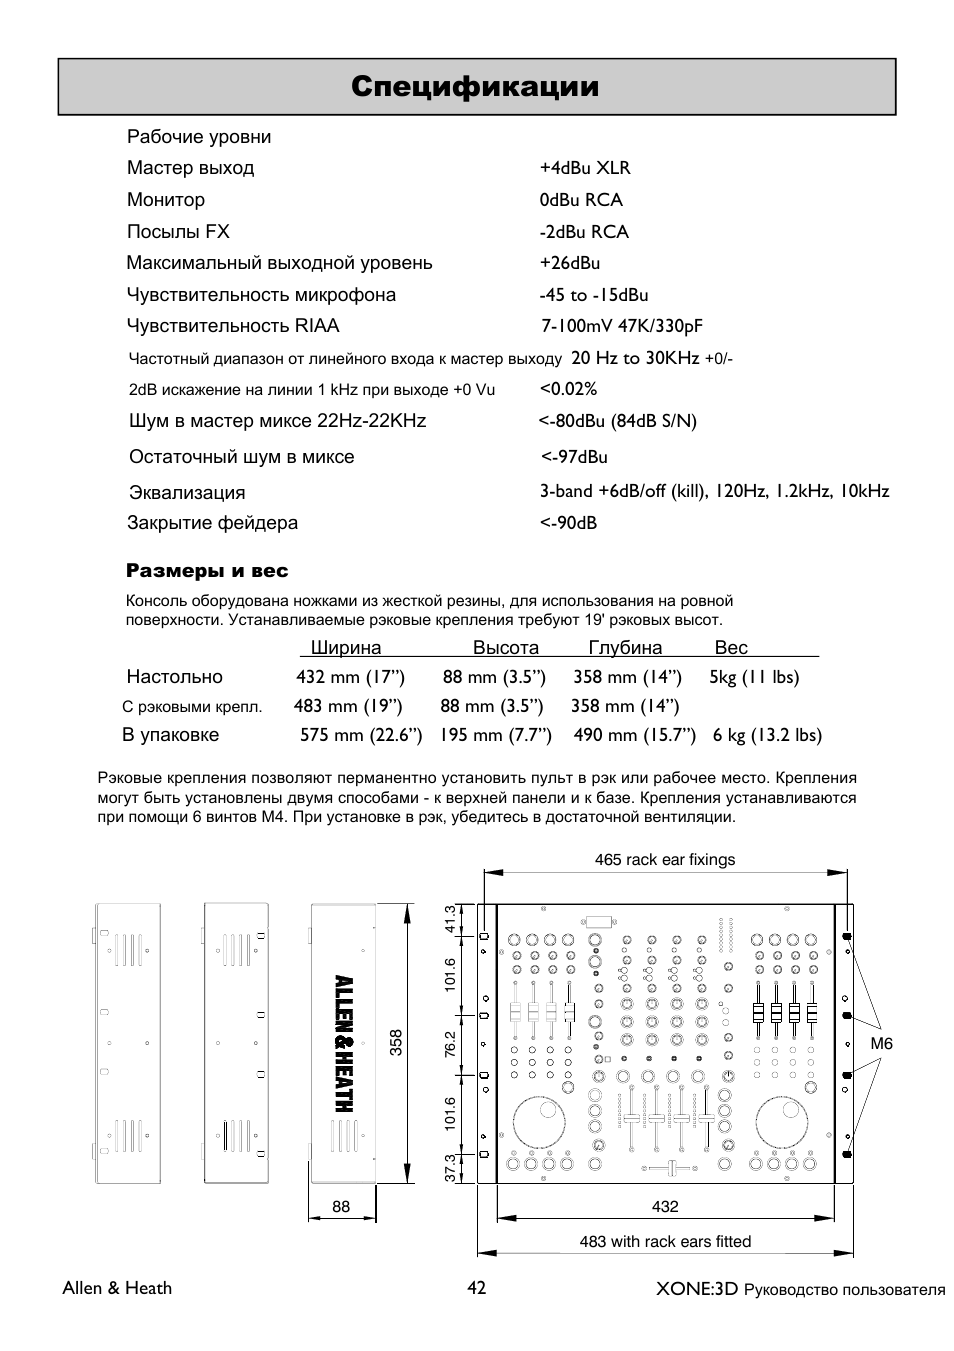 XONE 3d_ap6388_1 User Manual | Page 42 / 43